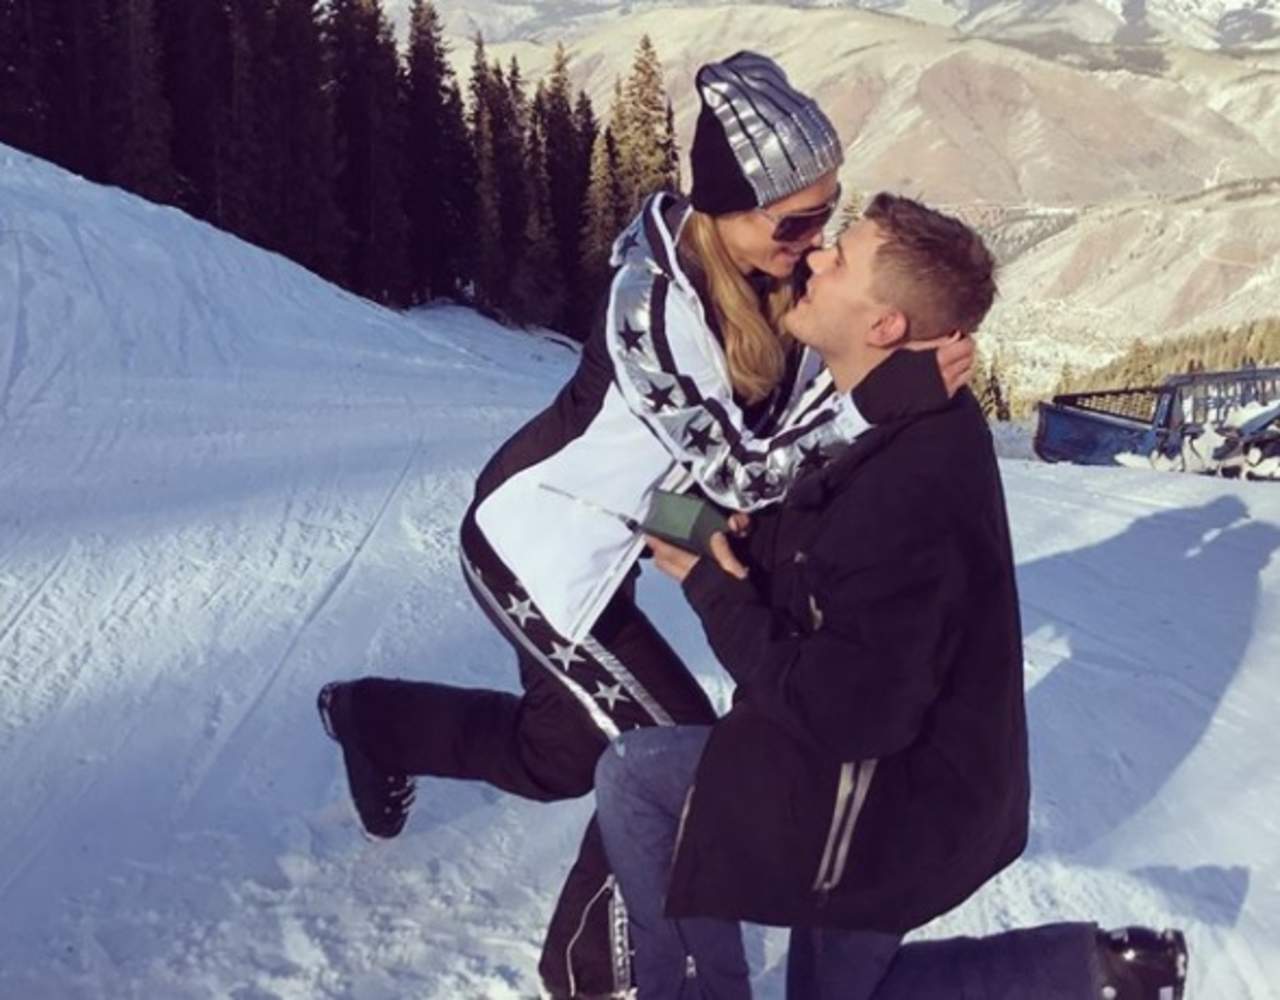 La empresaria compartió en su cuenta de Instagram fotografías del romántico momento en el que, de rodillas y con anillo en mano, su novio le hizo la propuesta durante sus vacaciones en Aspen, Colorado. (INSTAGRAM)